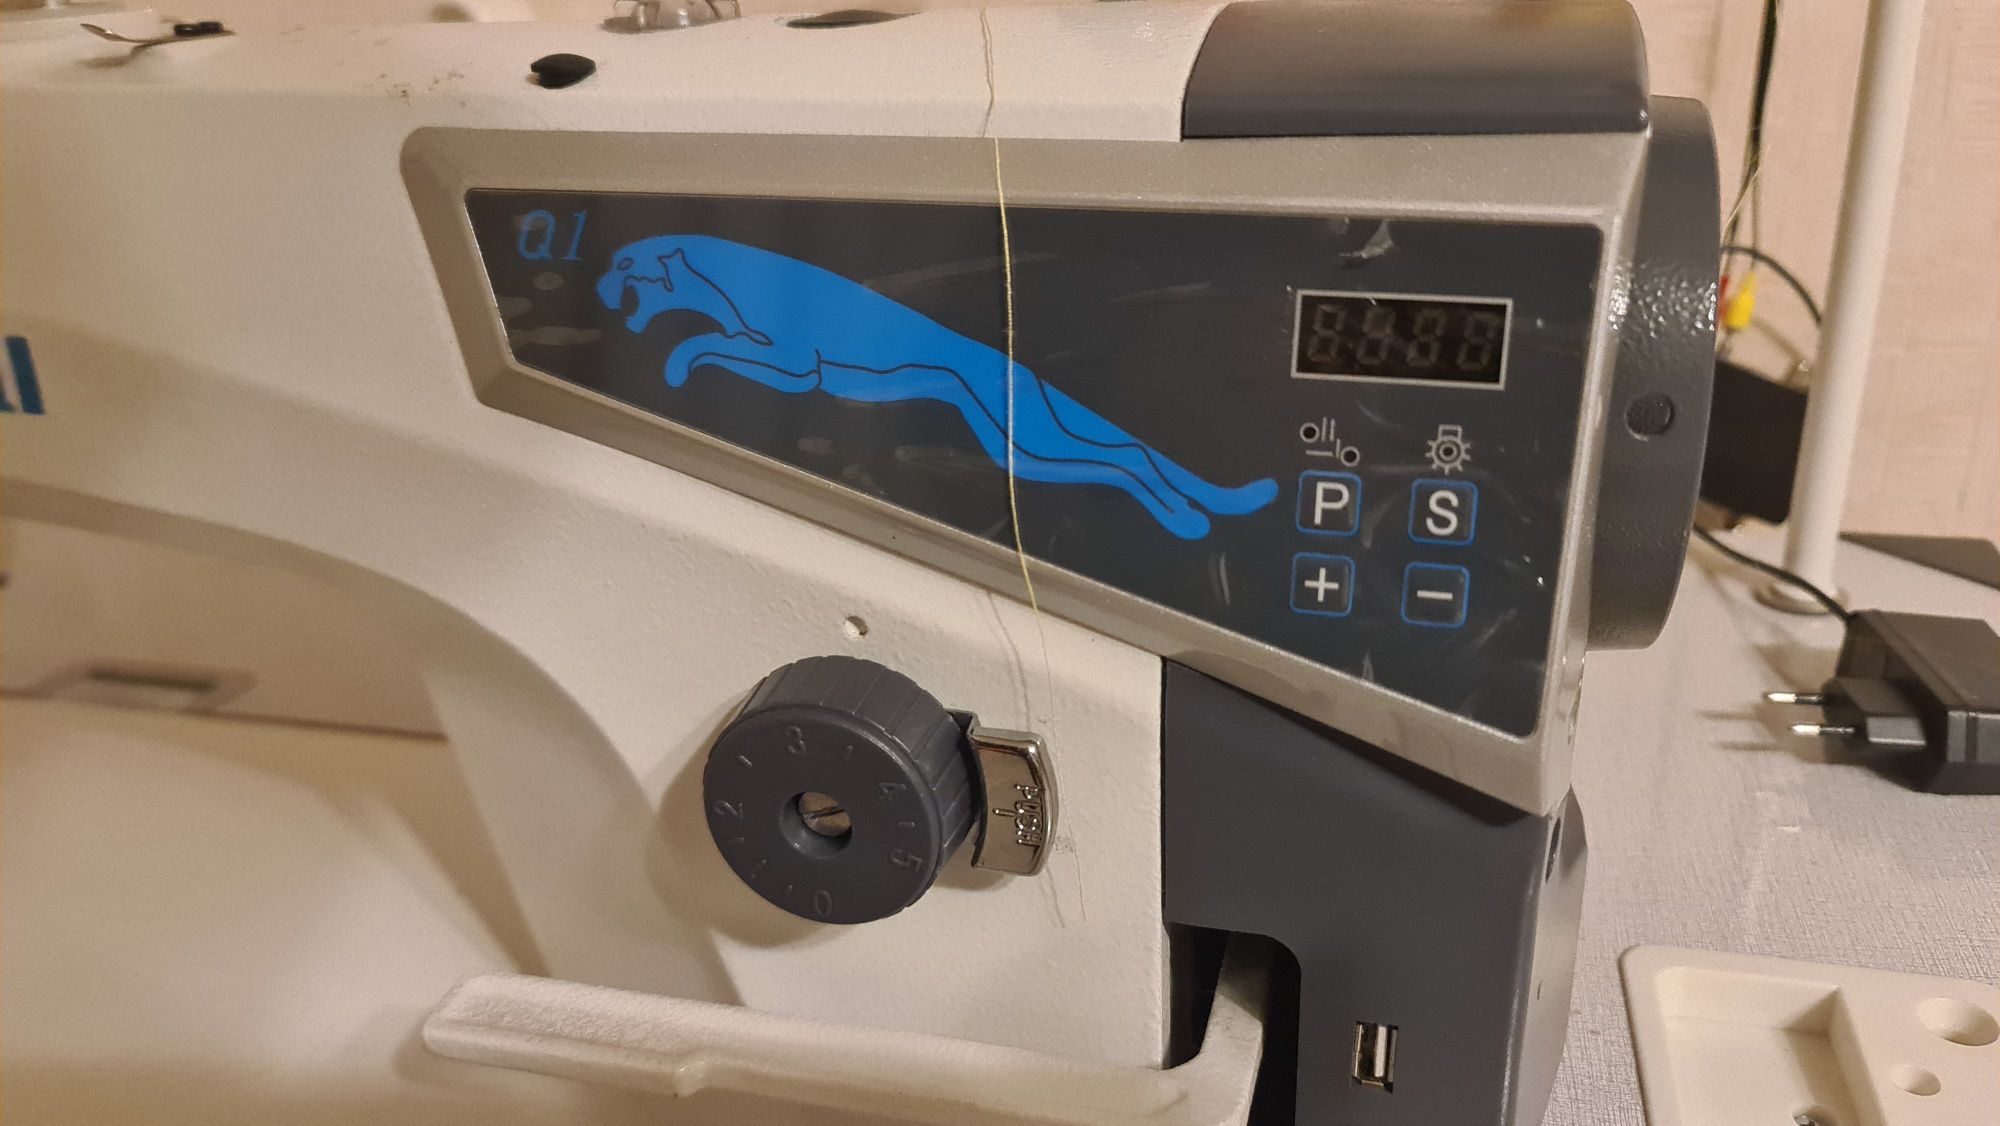 Промышленная прямострочка швейная машина Maqi Q1